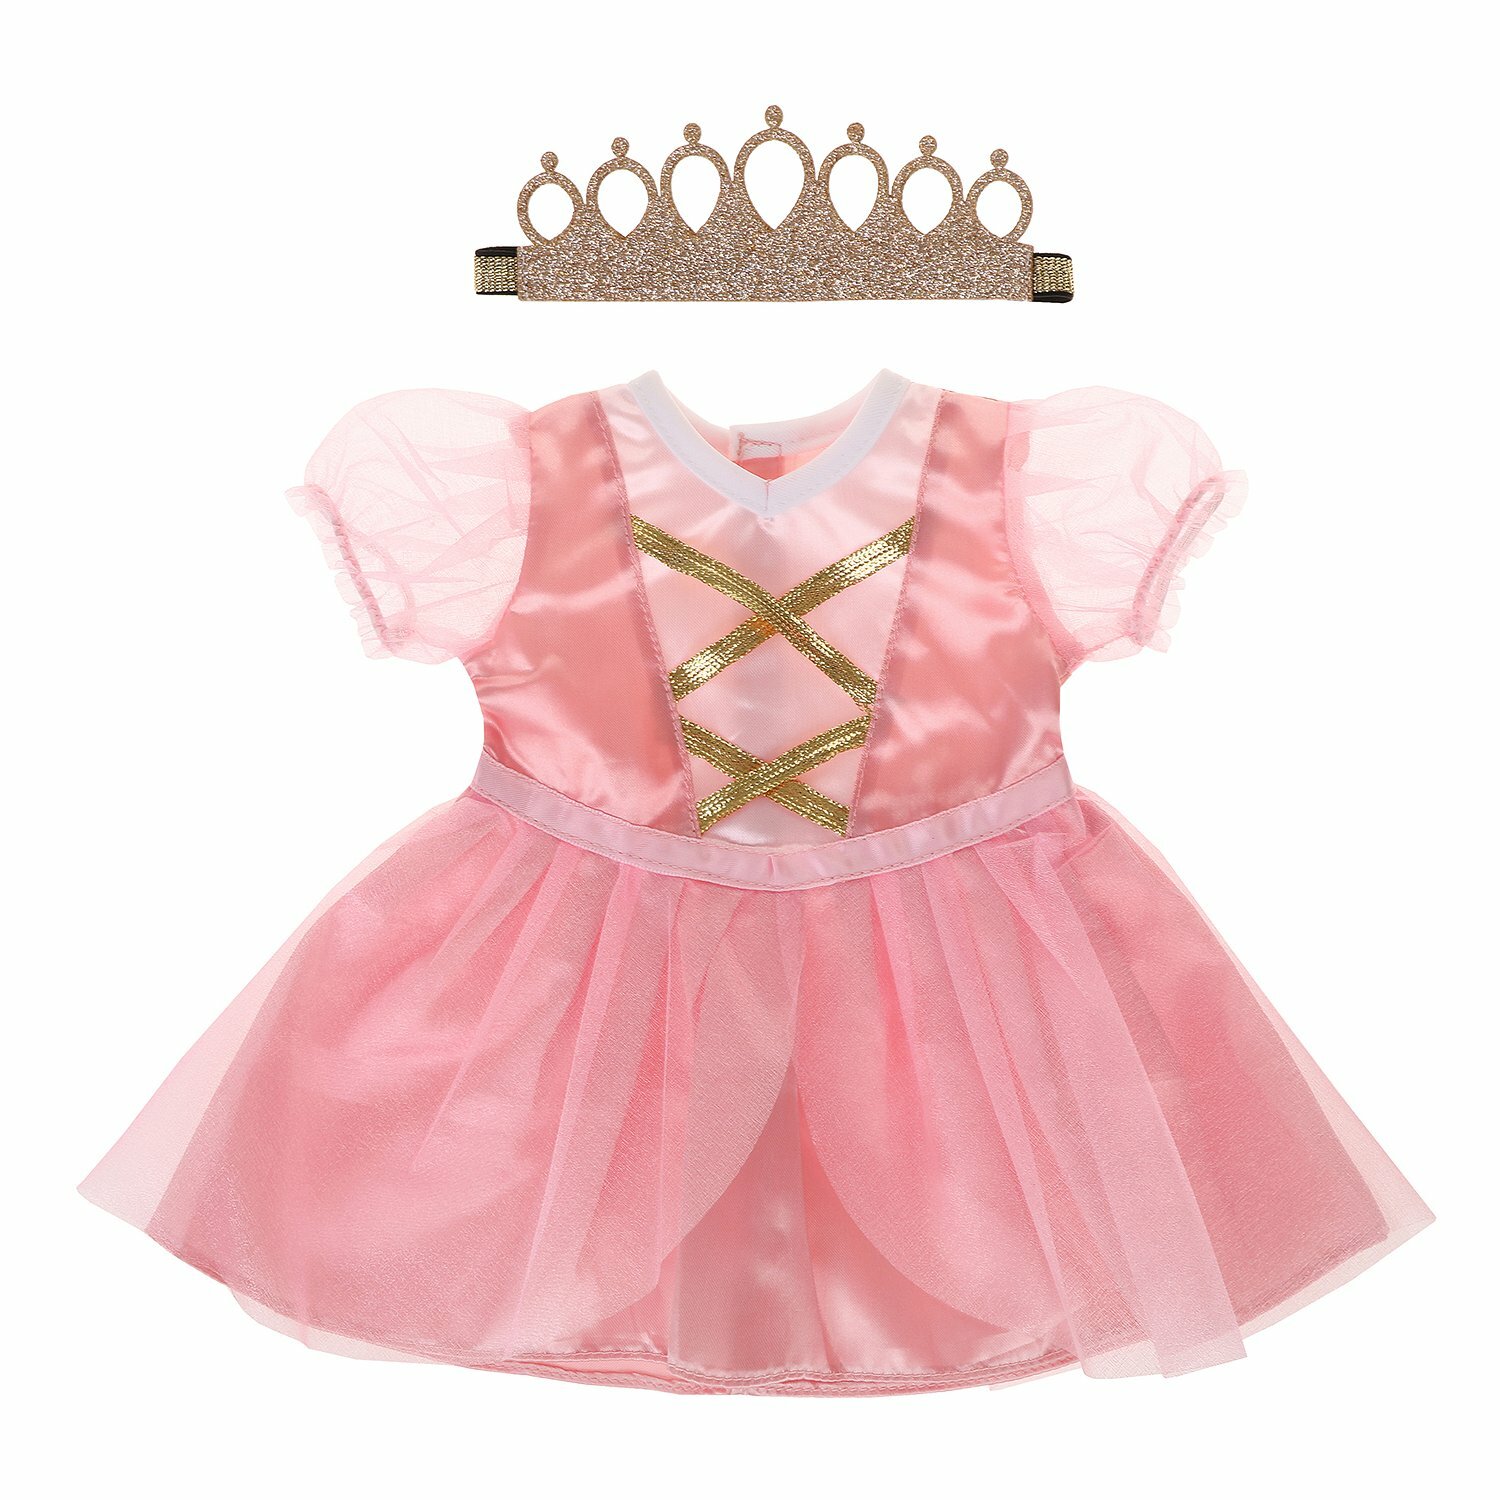 Одежда для кукол Мary Poppins Платье и повязка Принцесса, 38-43 см 452185